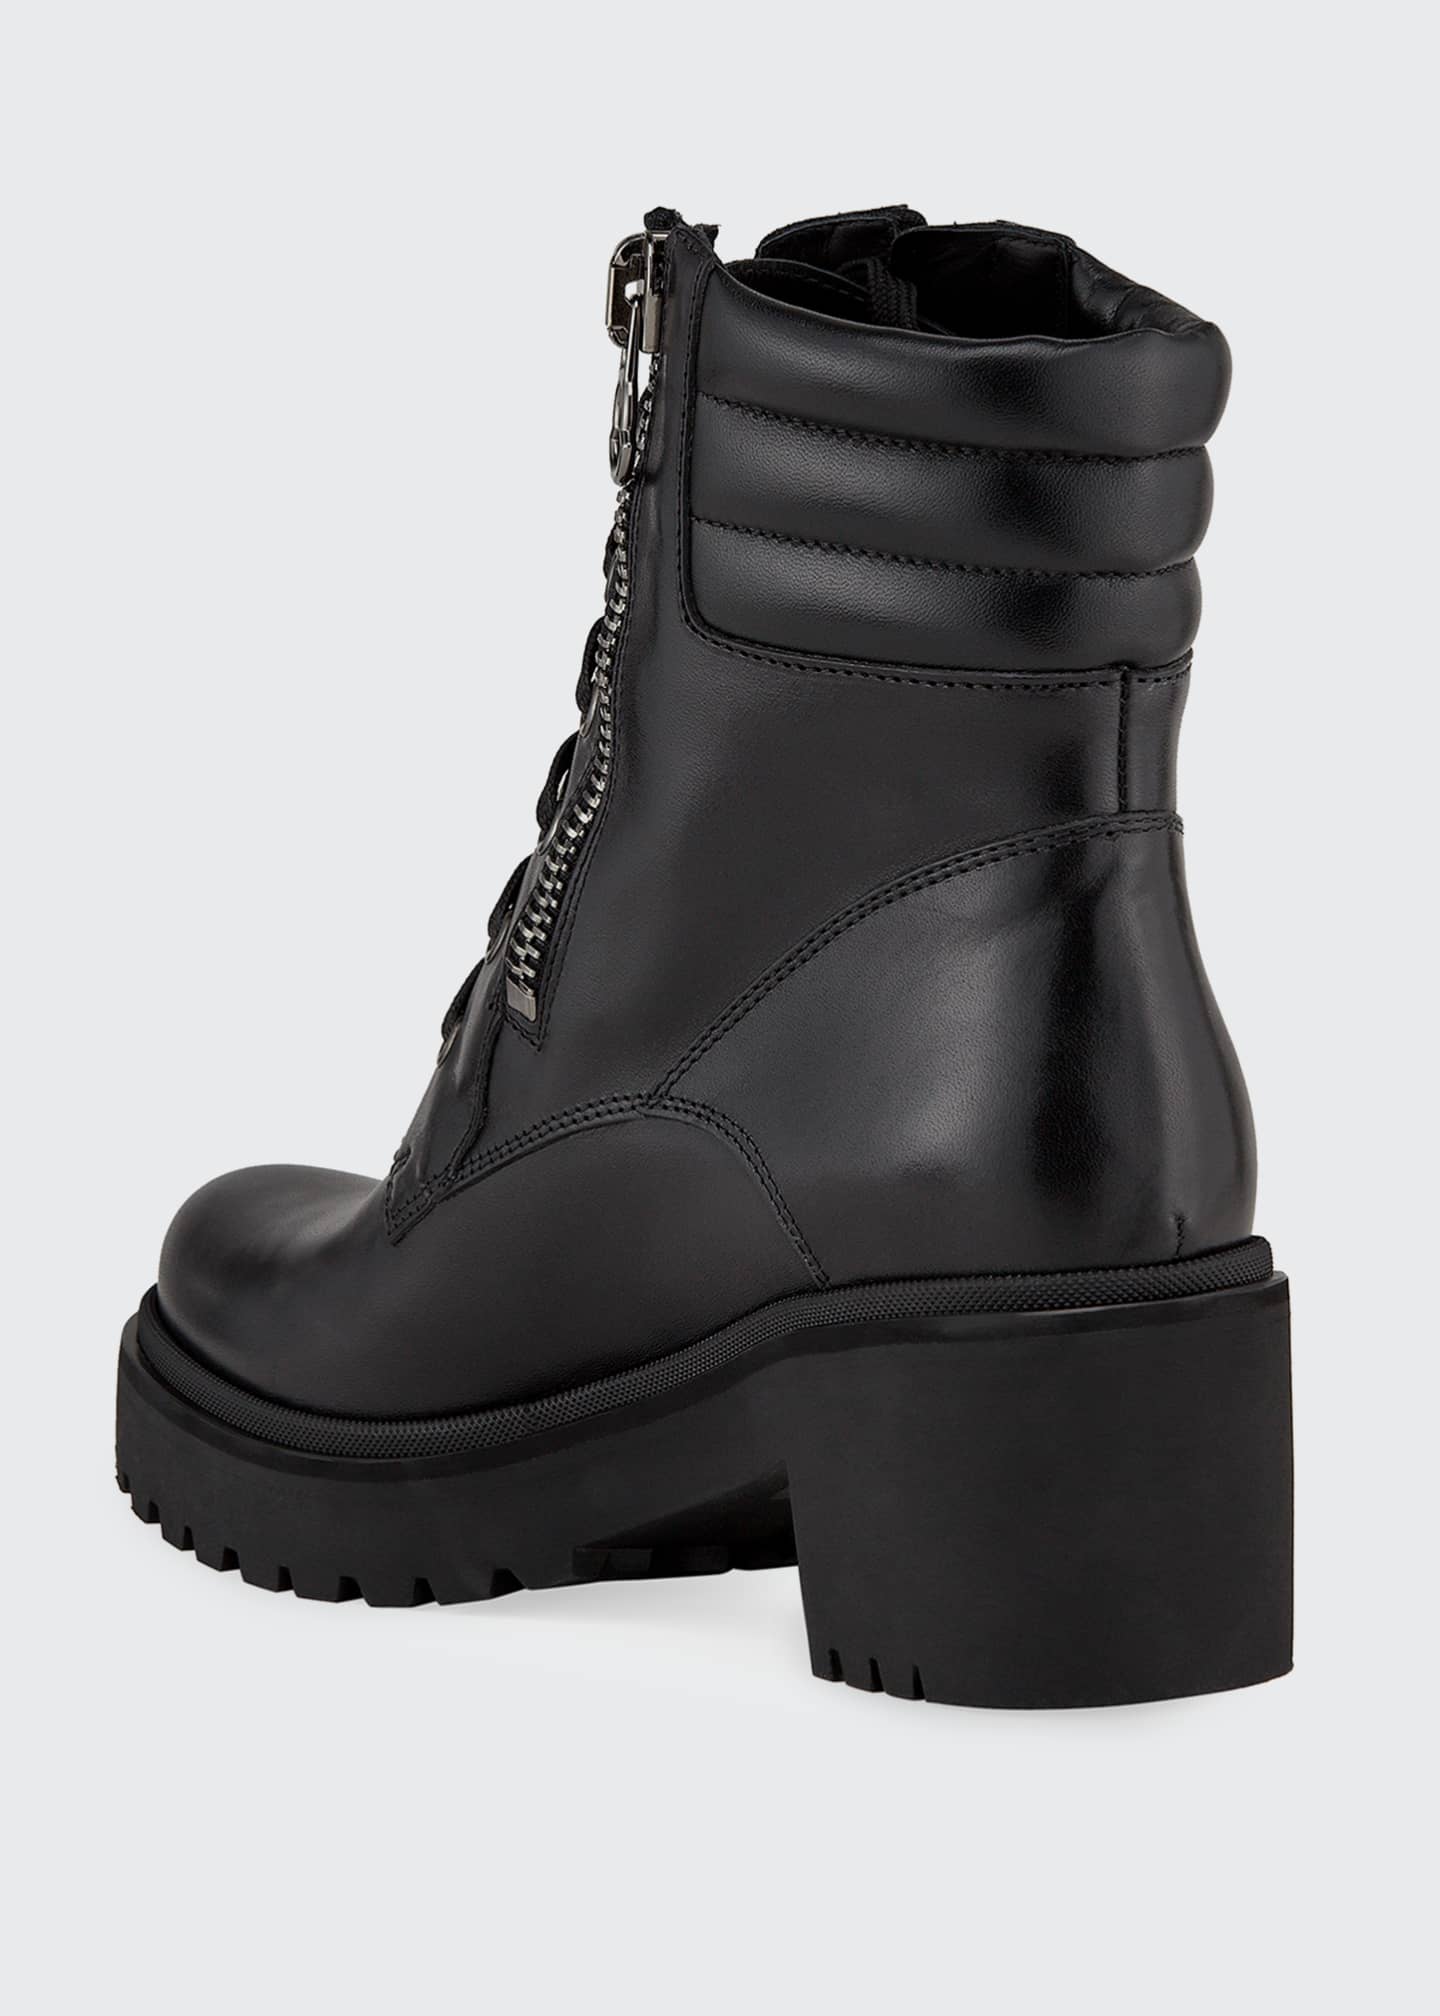 Moncler Viviane Block-Heel Leather Boots w/ Side Zip - Bergdorf Goodman